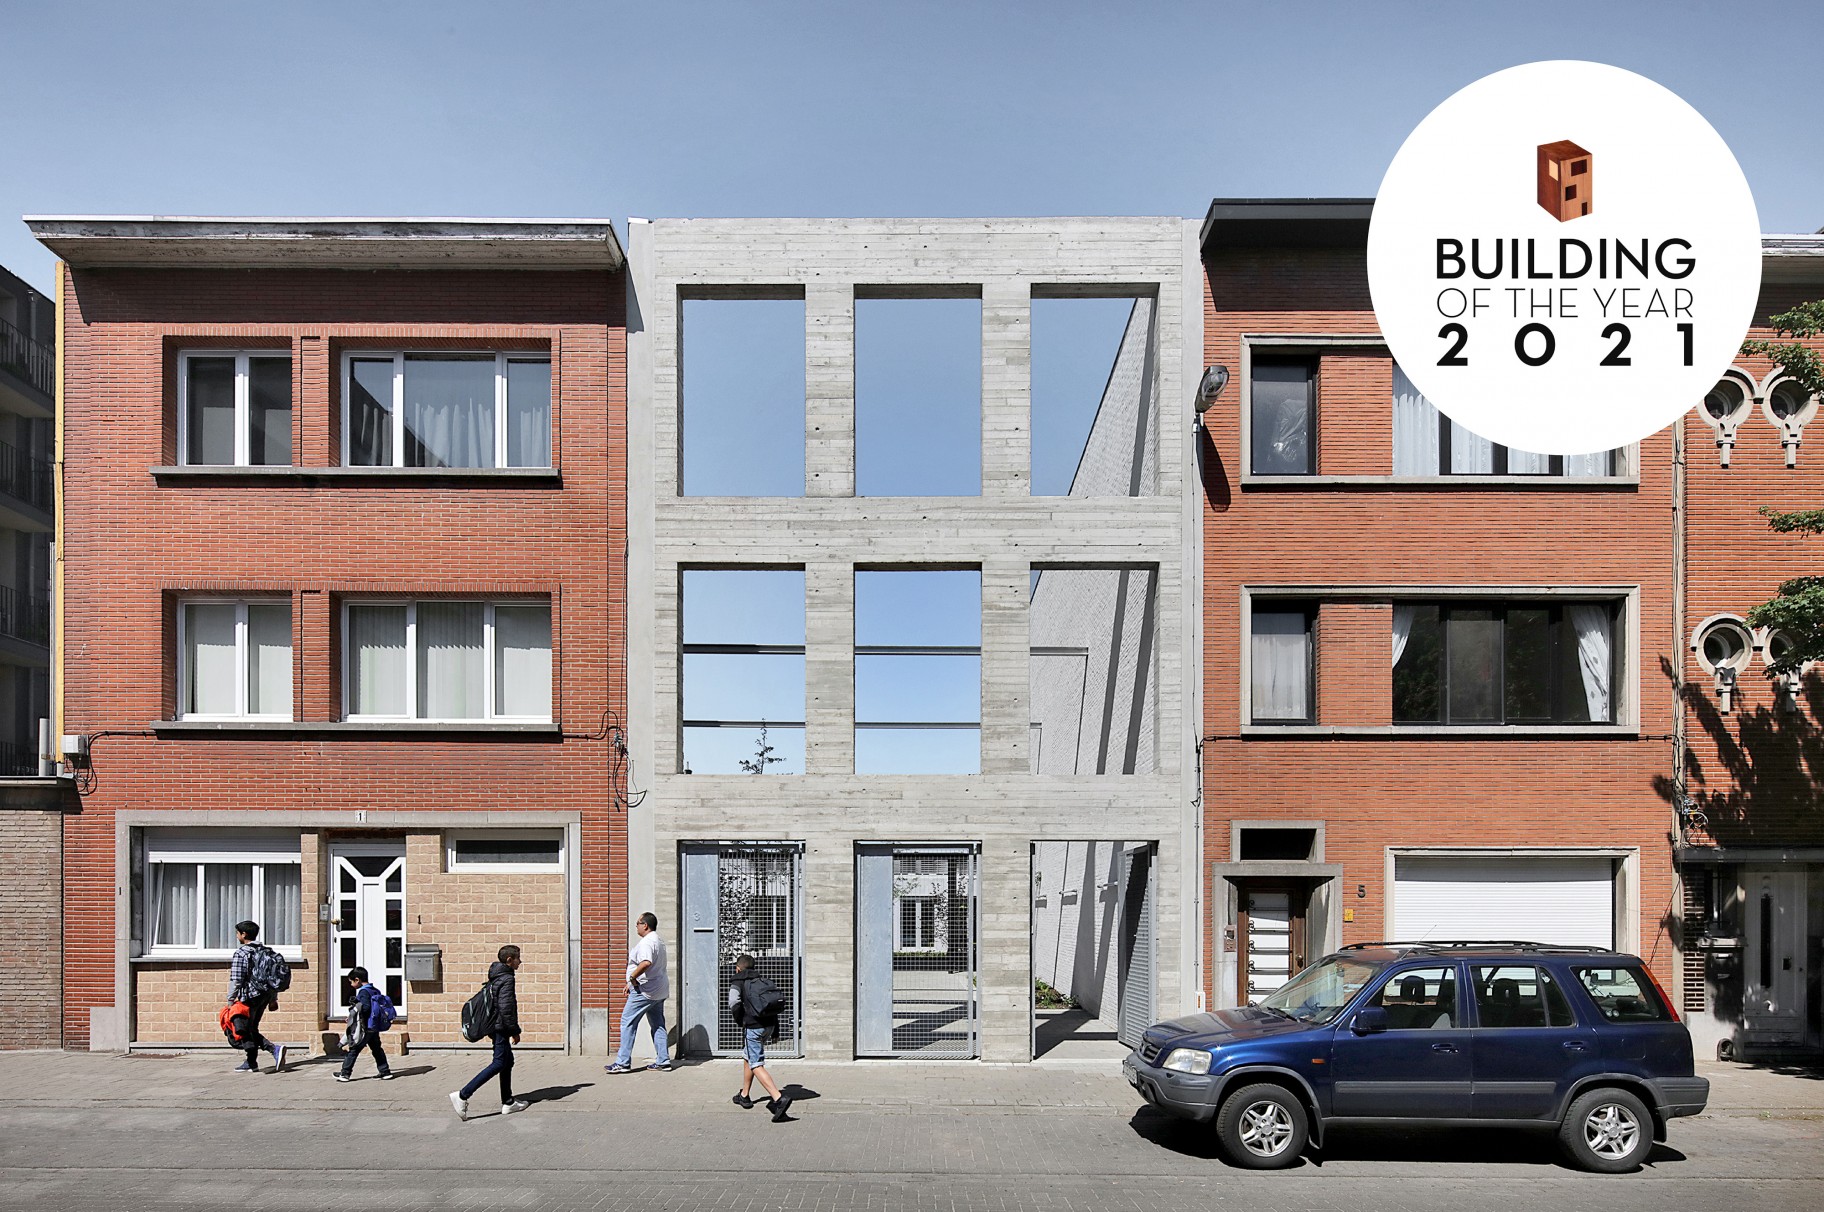 École maternelle Xaveriuscollege Borgerhout nominé pour Building of the Year 2021